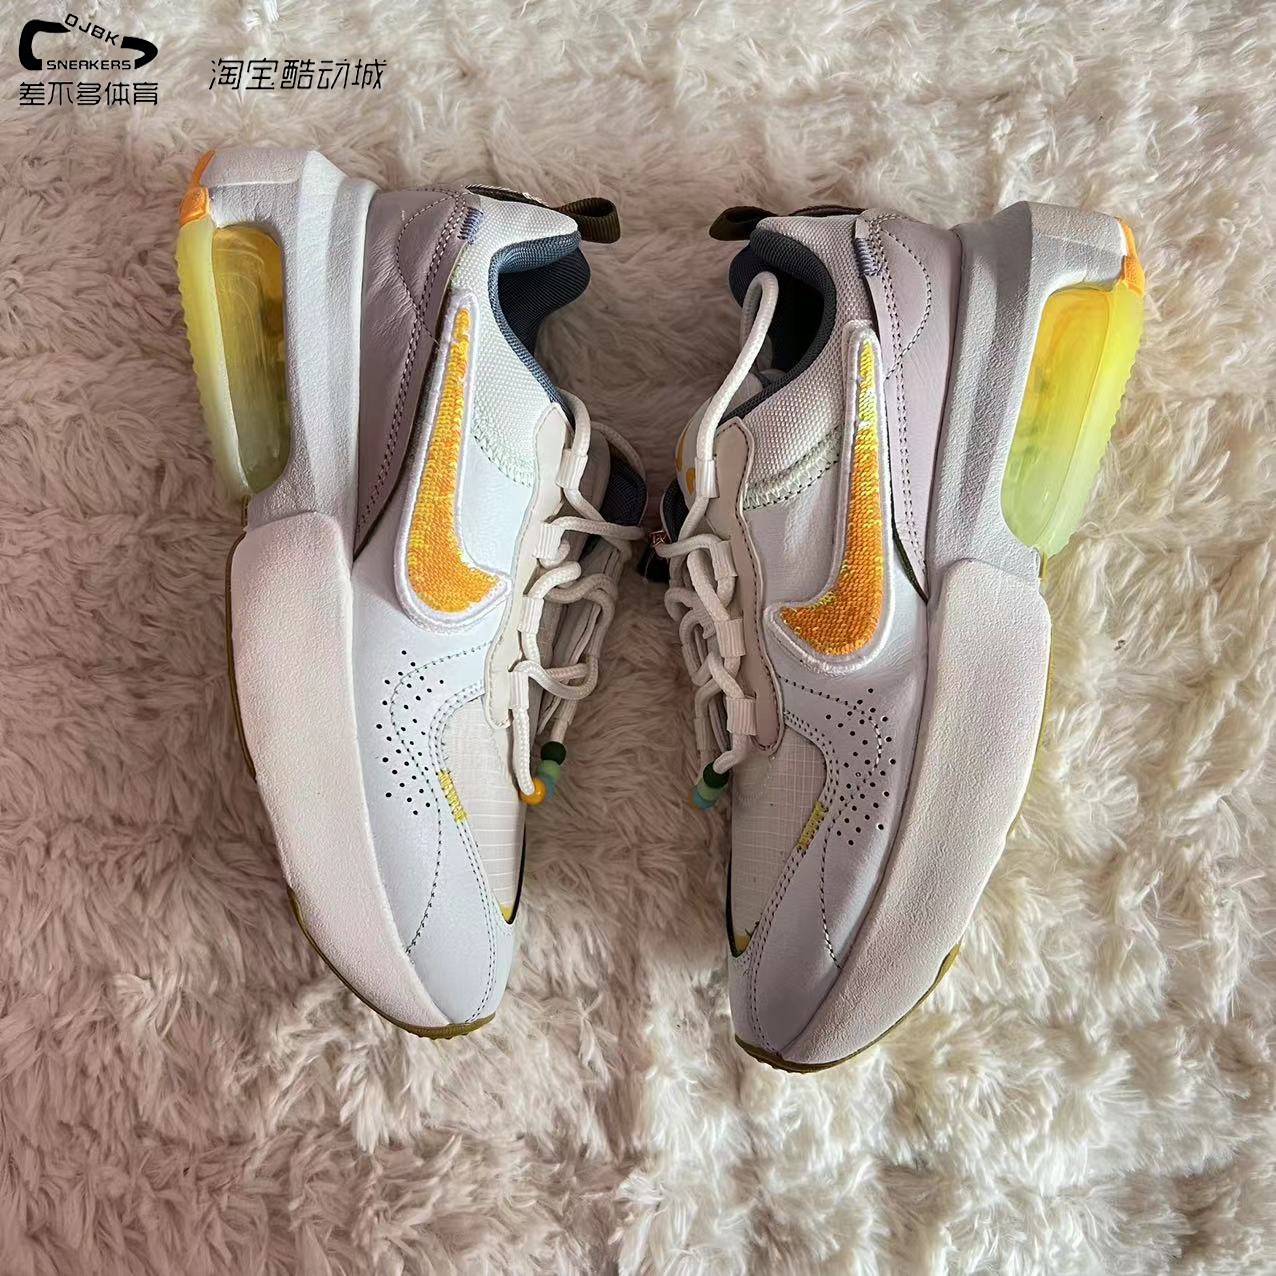 耐克Nike Air Max Verona 低帮 运动休闲鞋 女款白黄 CZ8685-131 运动鞋new 运动休闲鞋 原图主图